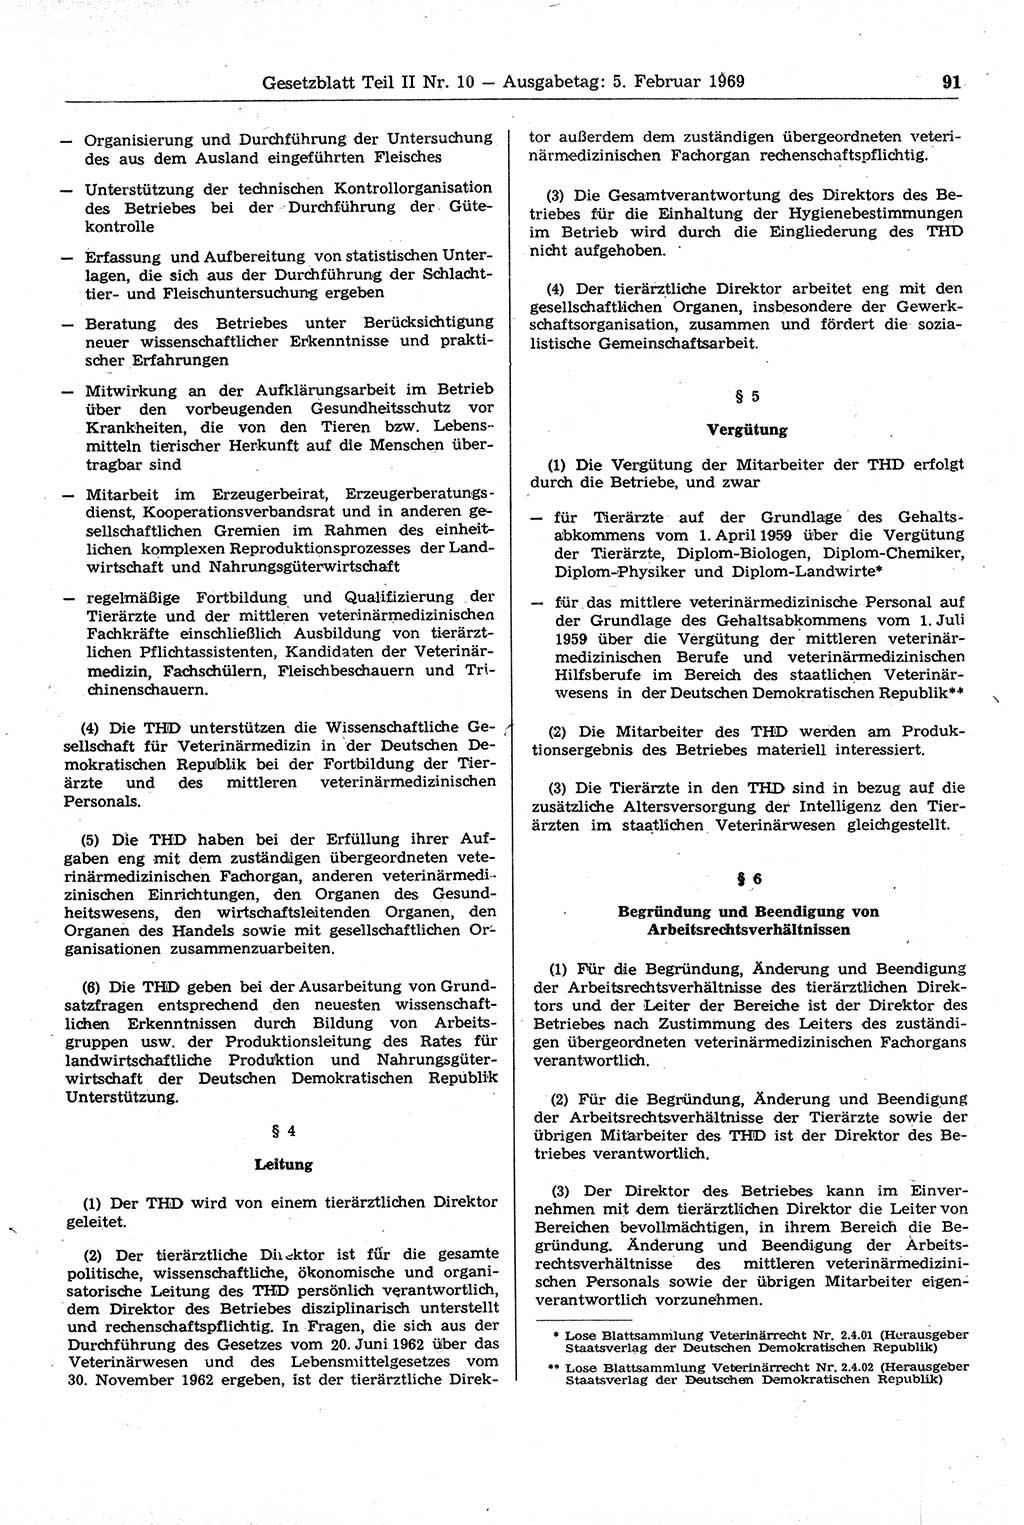 Gesetzblatt (GBl.) der Deutschen Demokratischen Republik (DDR) Teil ⅠⅠ 1969, Seite 91 (GBl. DDR ⅠⅠ 1969, S. 91)